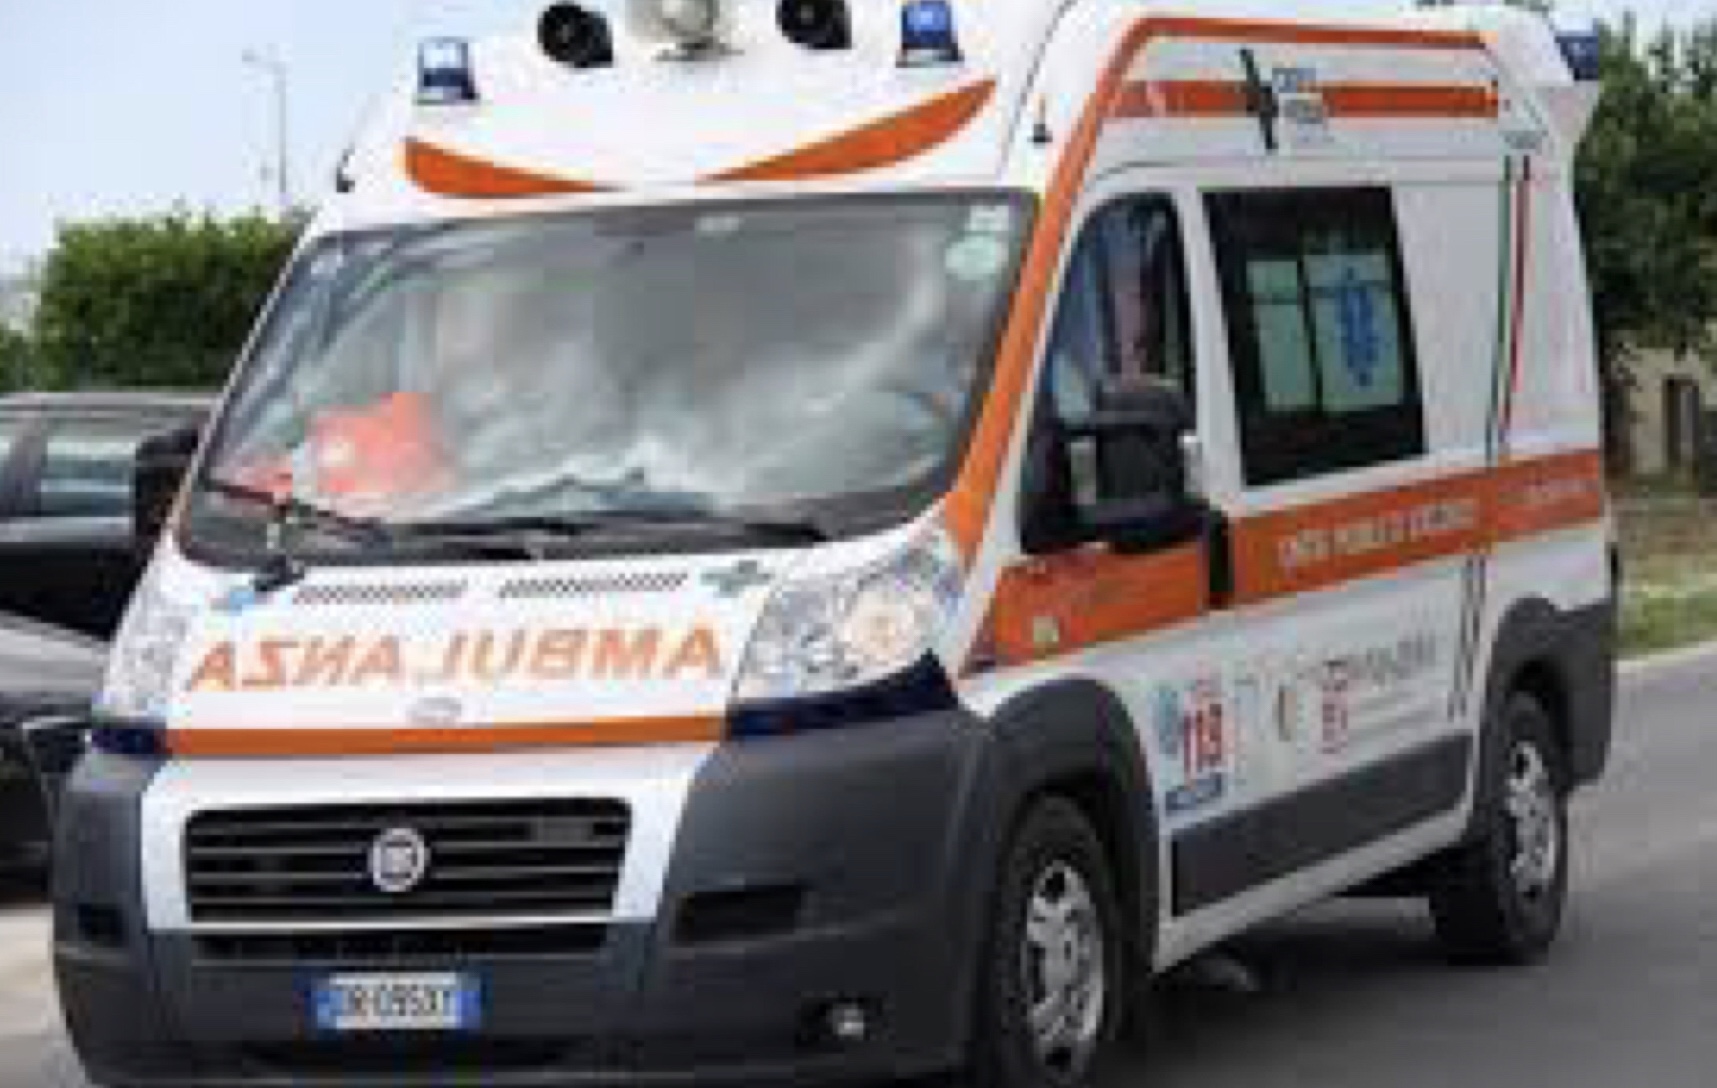 Morrovalle – Precipita dal terzo piano, 81enne muore in ospedale